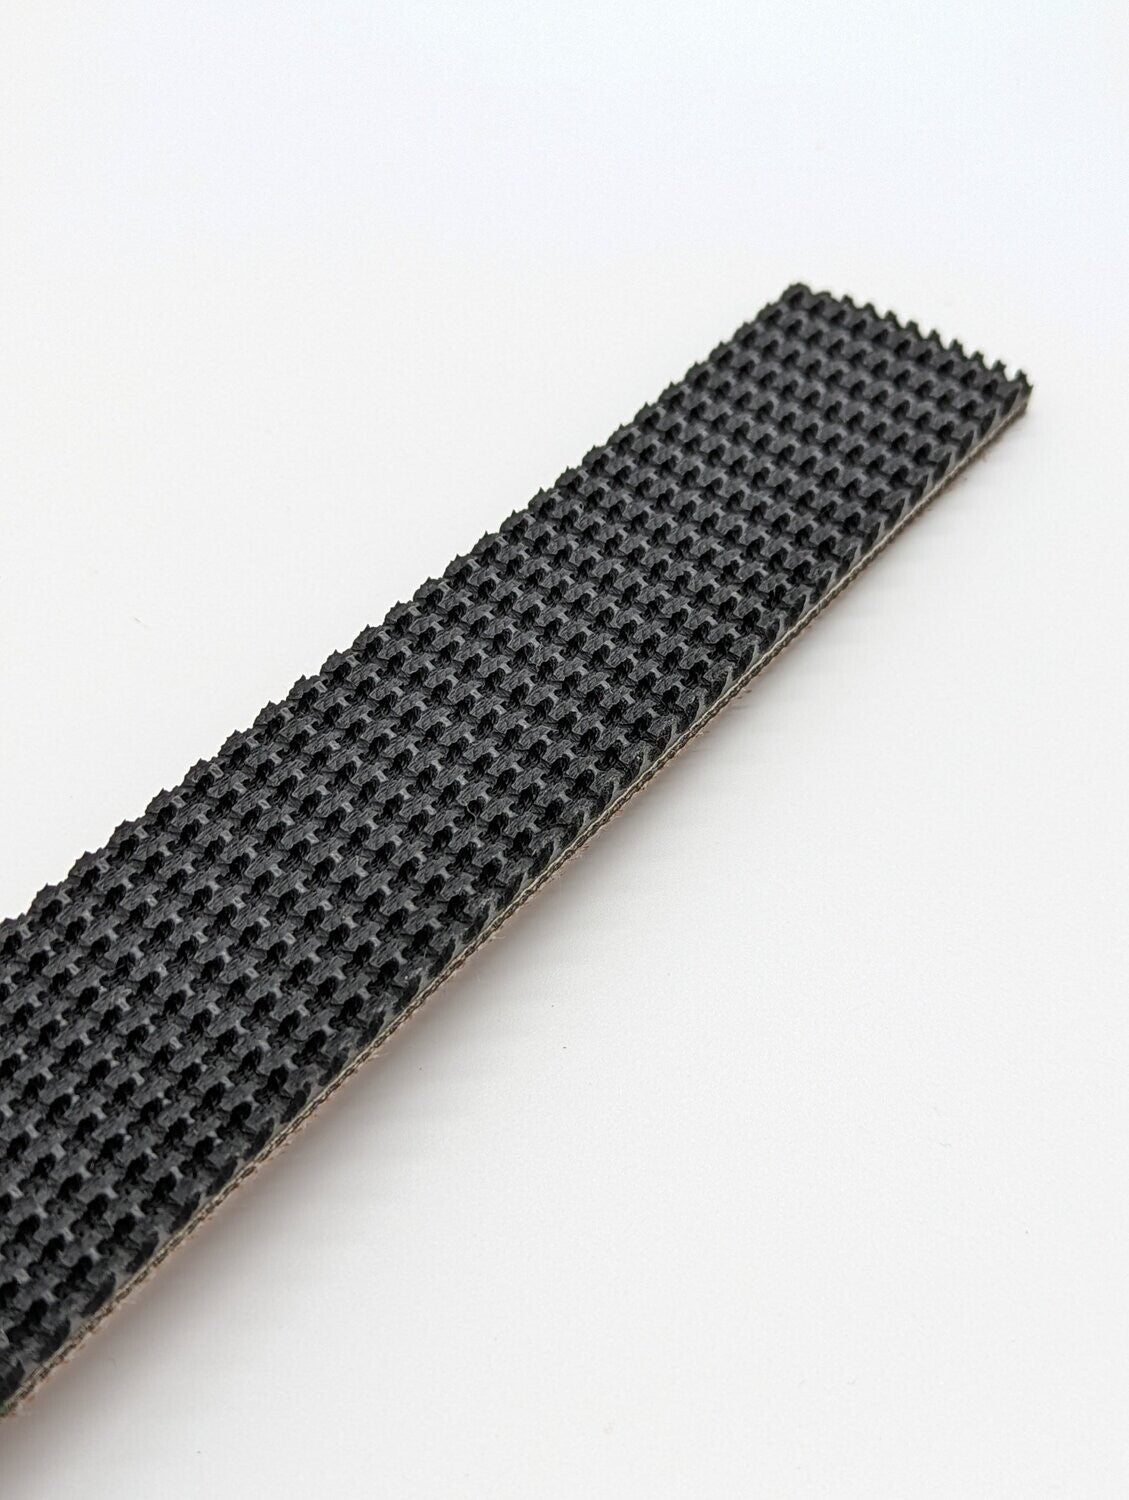 1.5" Wide Black 3 Ply Neoprene Rubber Tread - 10 Foot QTY